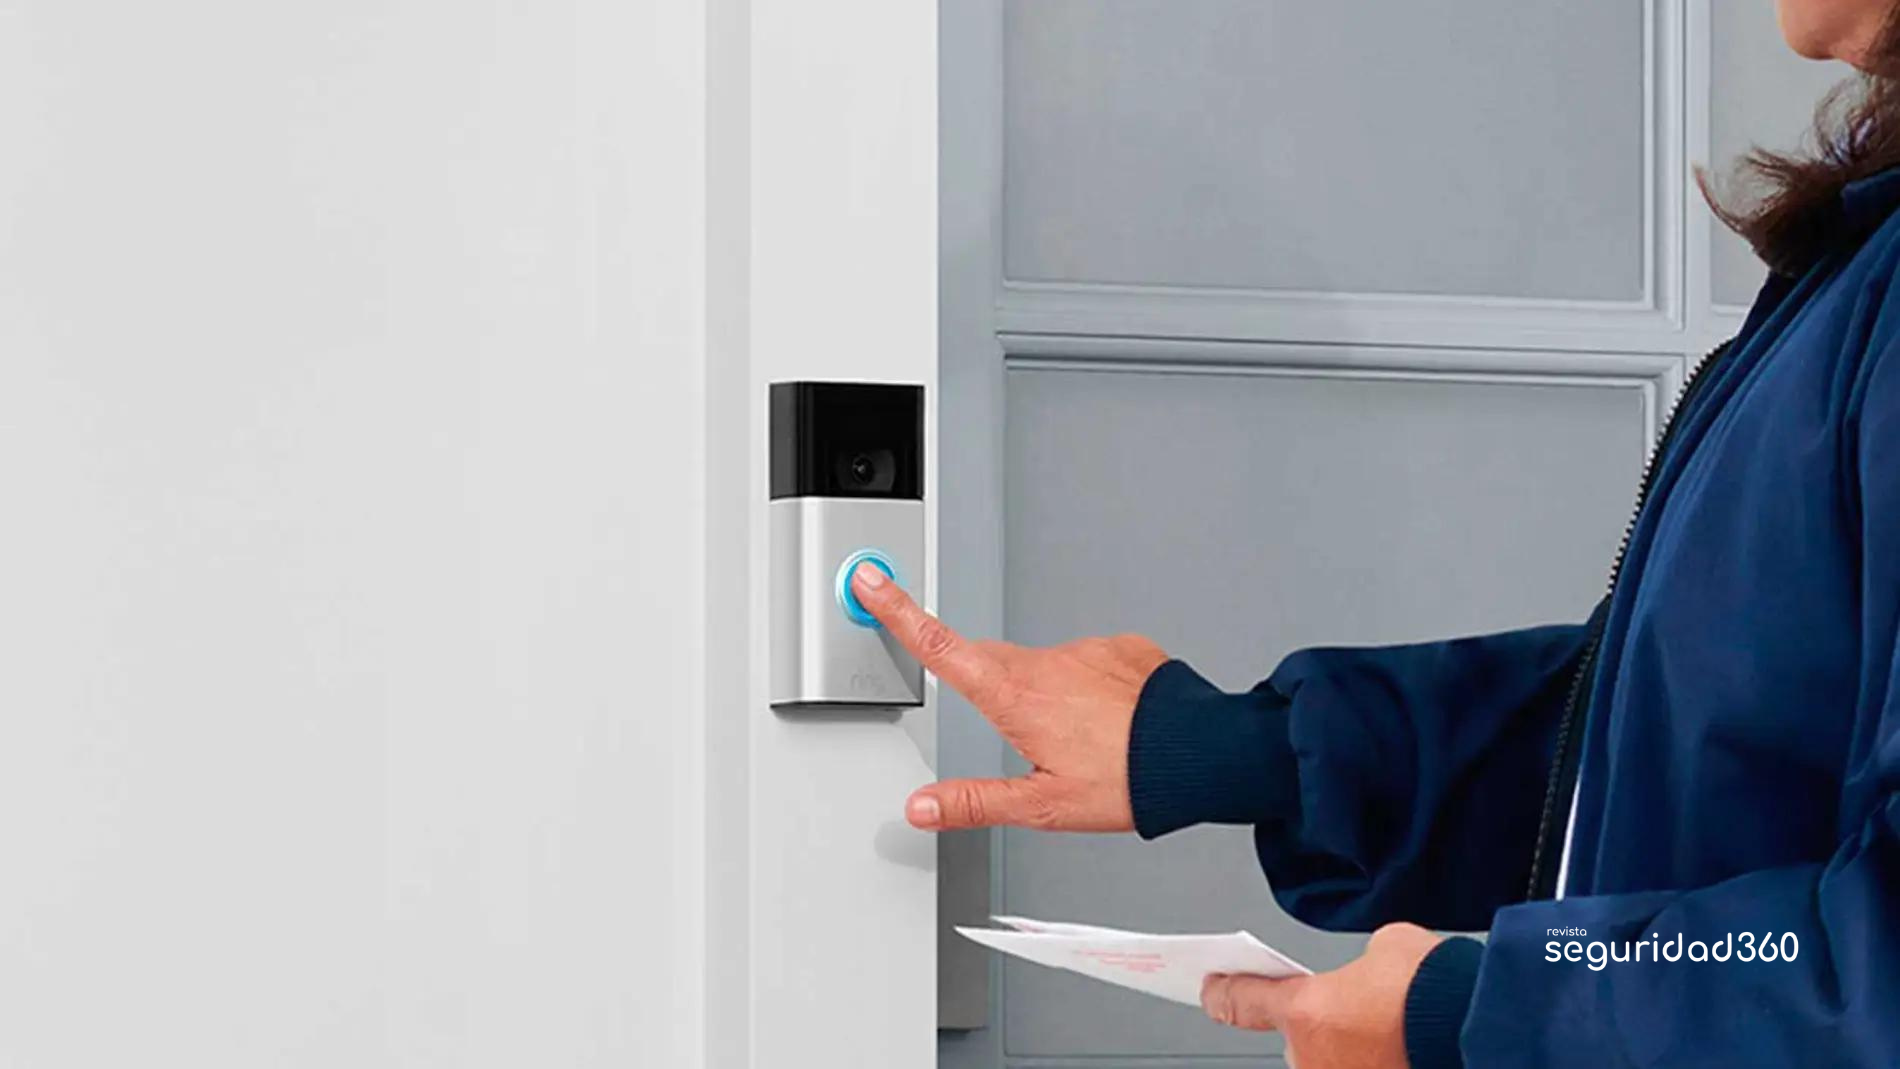 El timbre inalámbrico ayuda a mejorar la seguridad en el hogar? - Revista  Seguridad 360